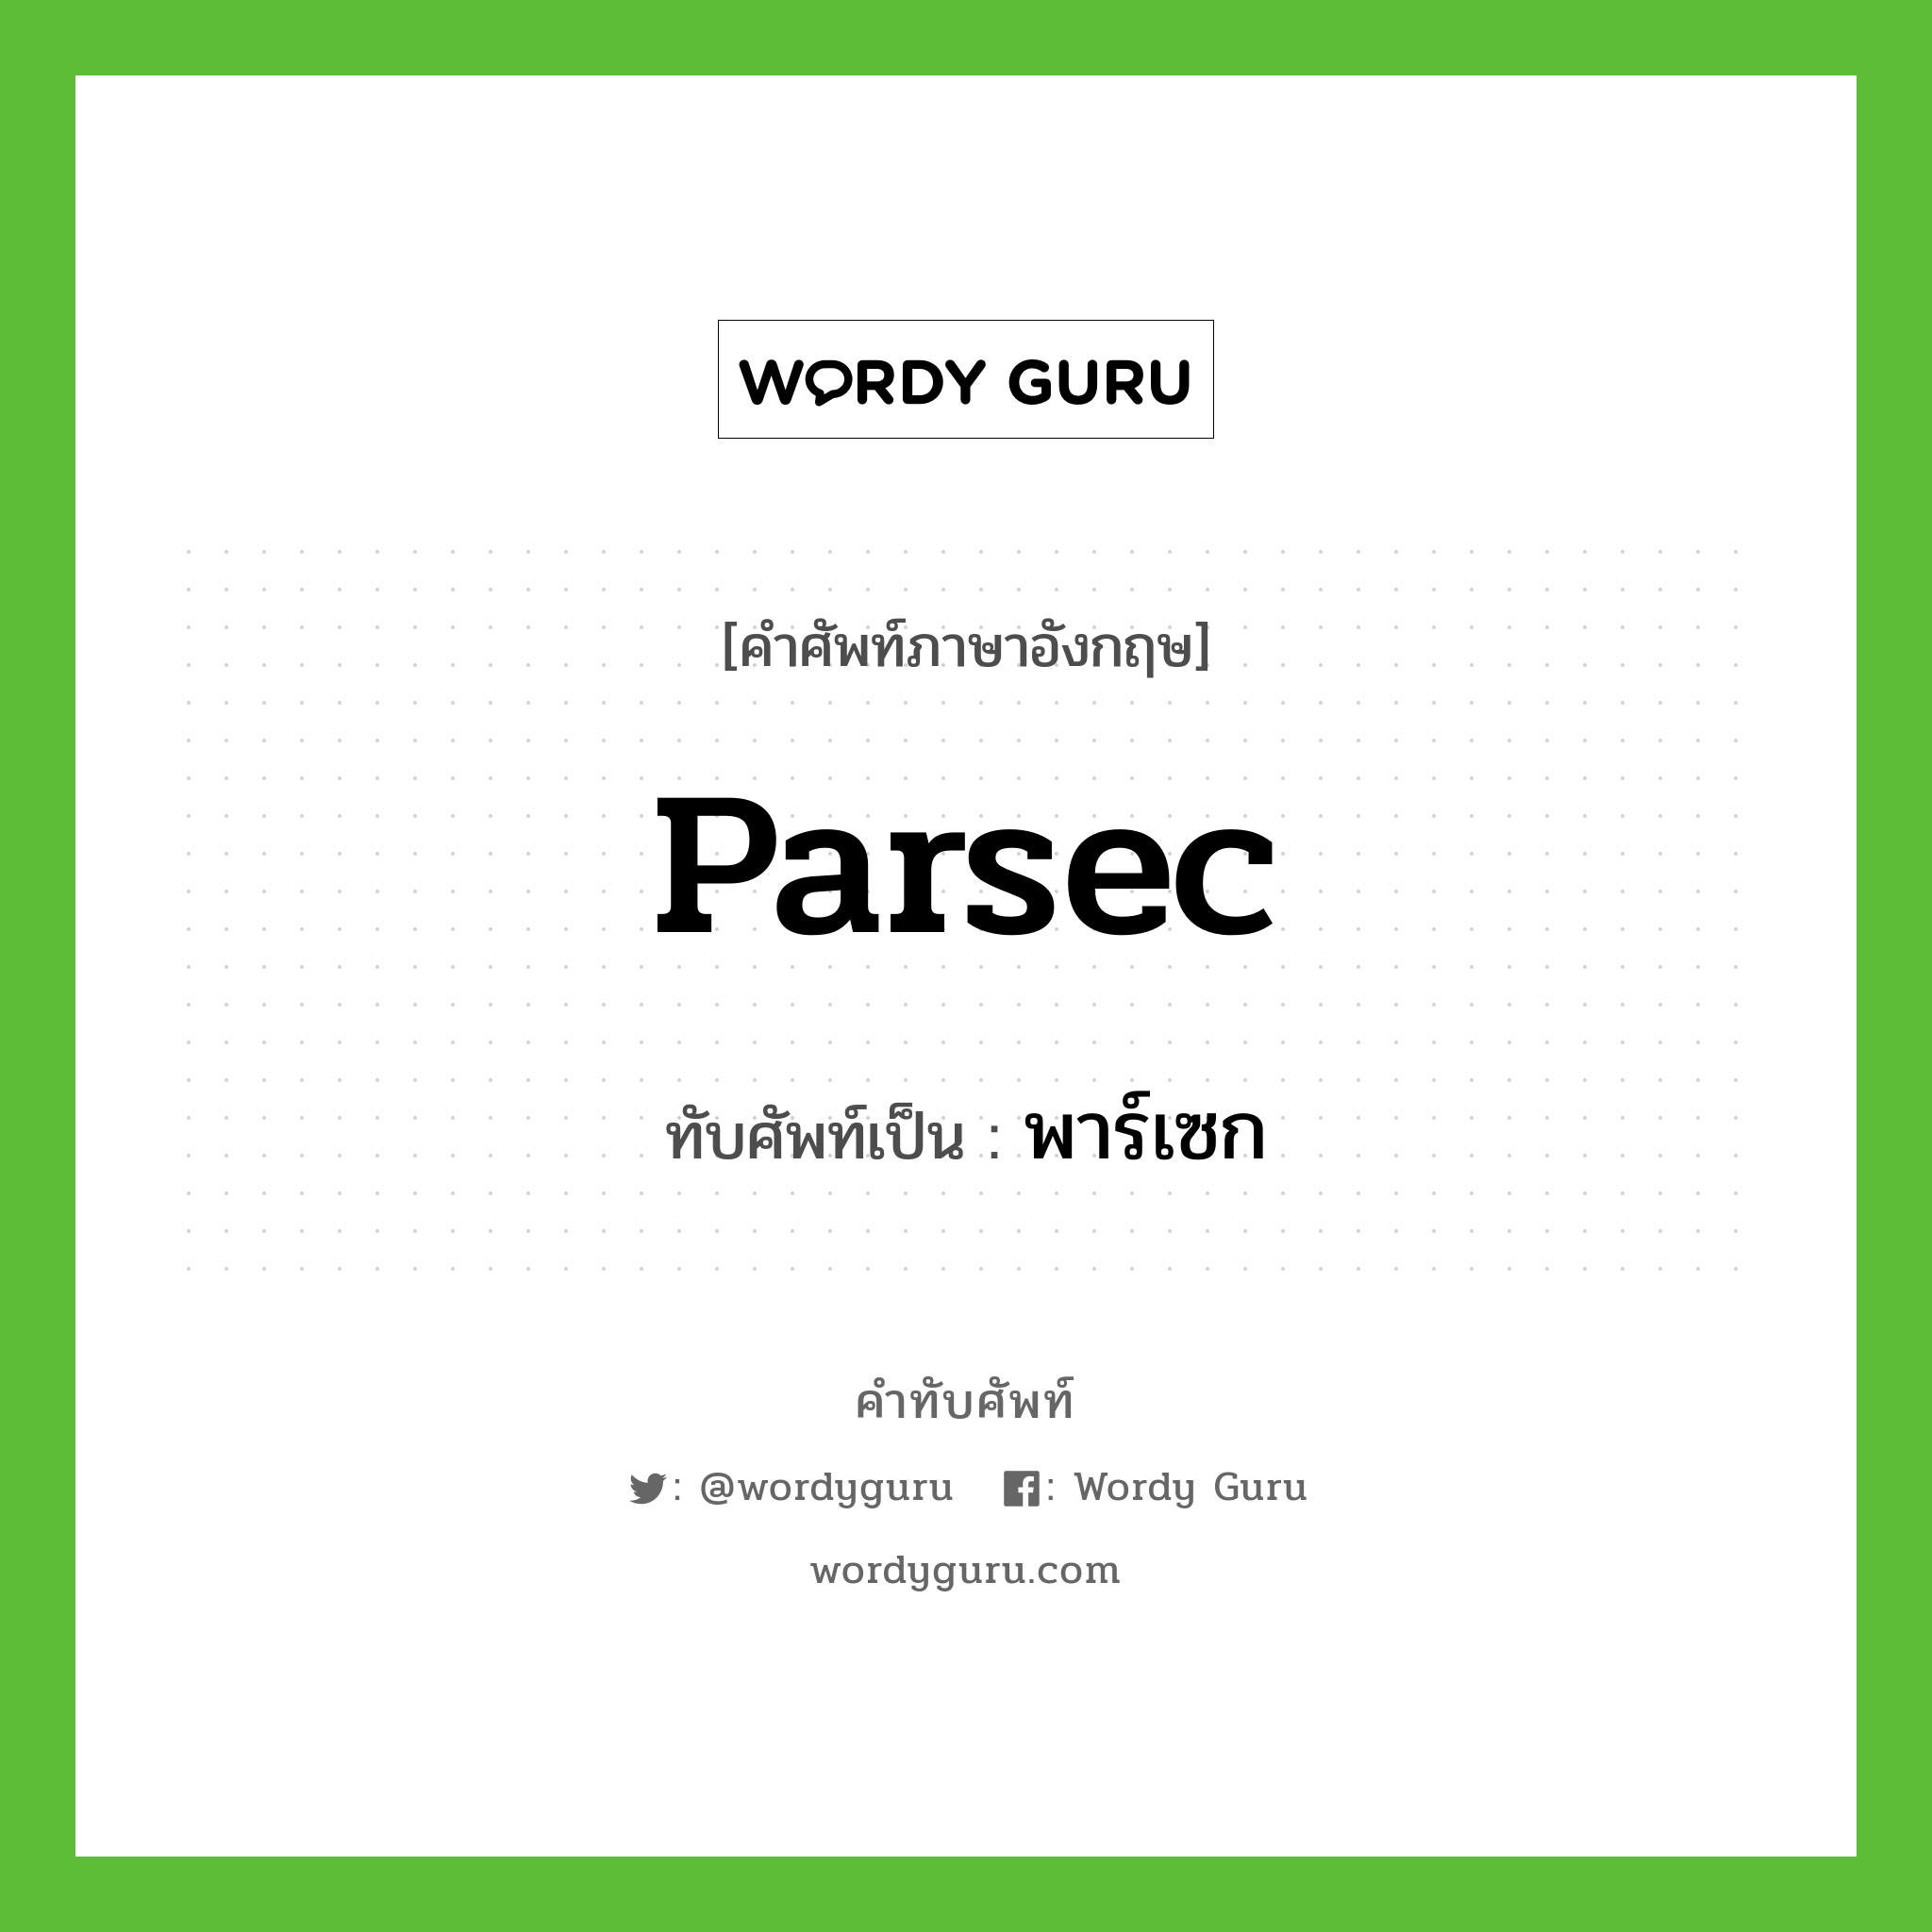 พาร์เซก เขียนอย่างไร?, คำศัพท์ภาษาอังกฤษ พาร์เซก ทับศัพท์เป็น parsec